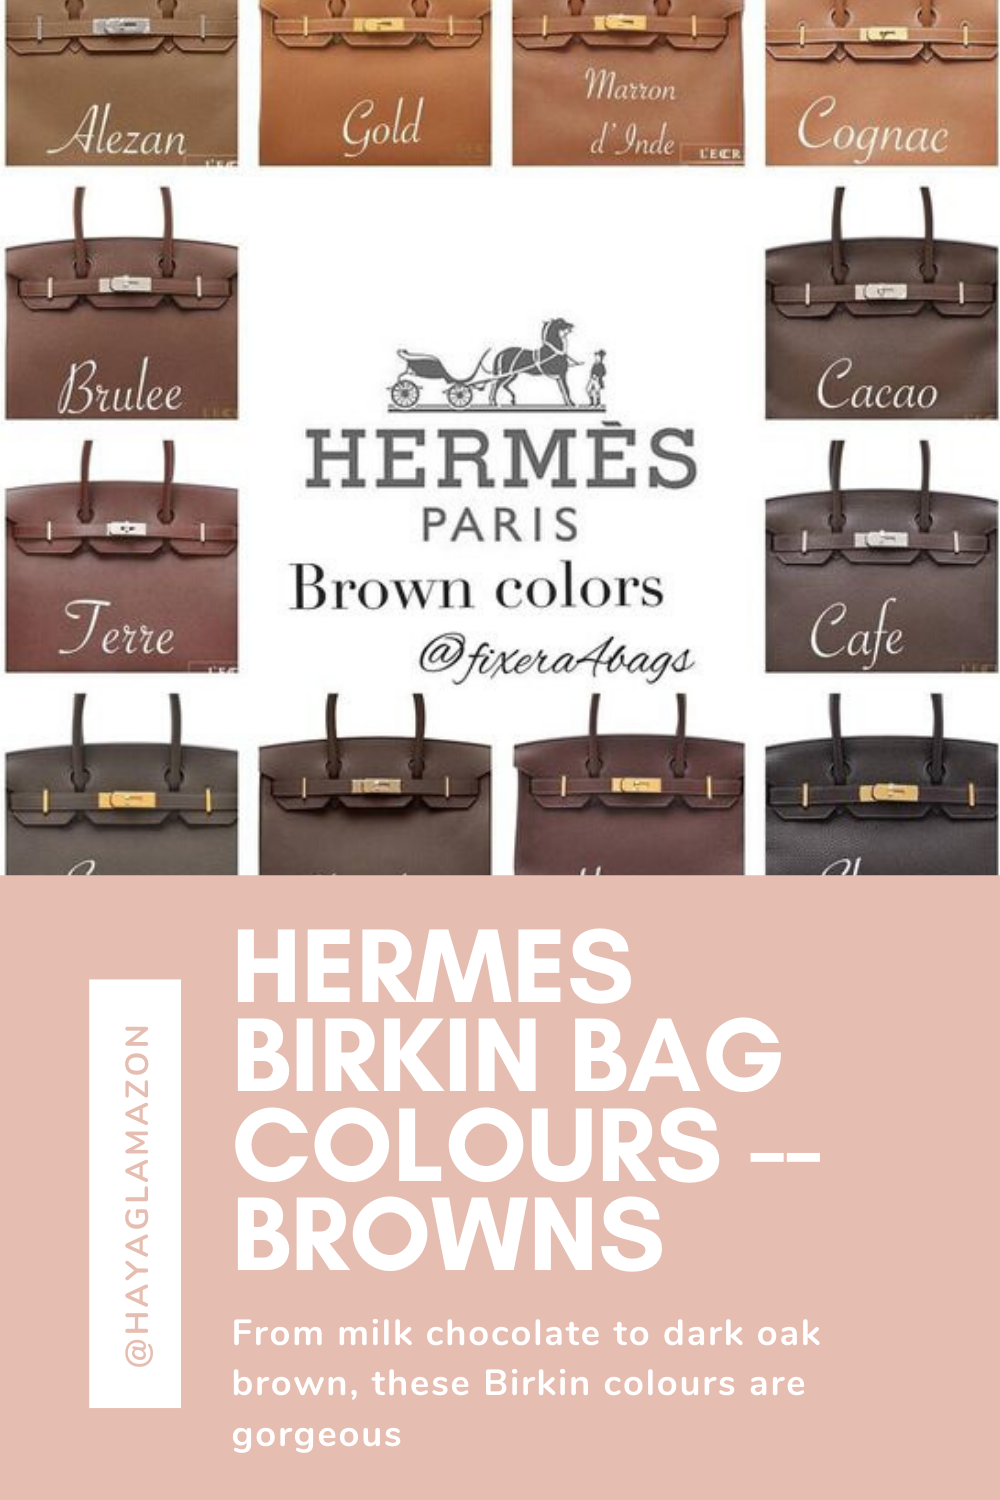 HERMES BIRKIN BAG COLOURS -- BROWNS